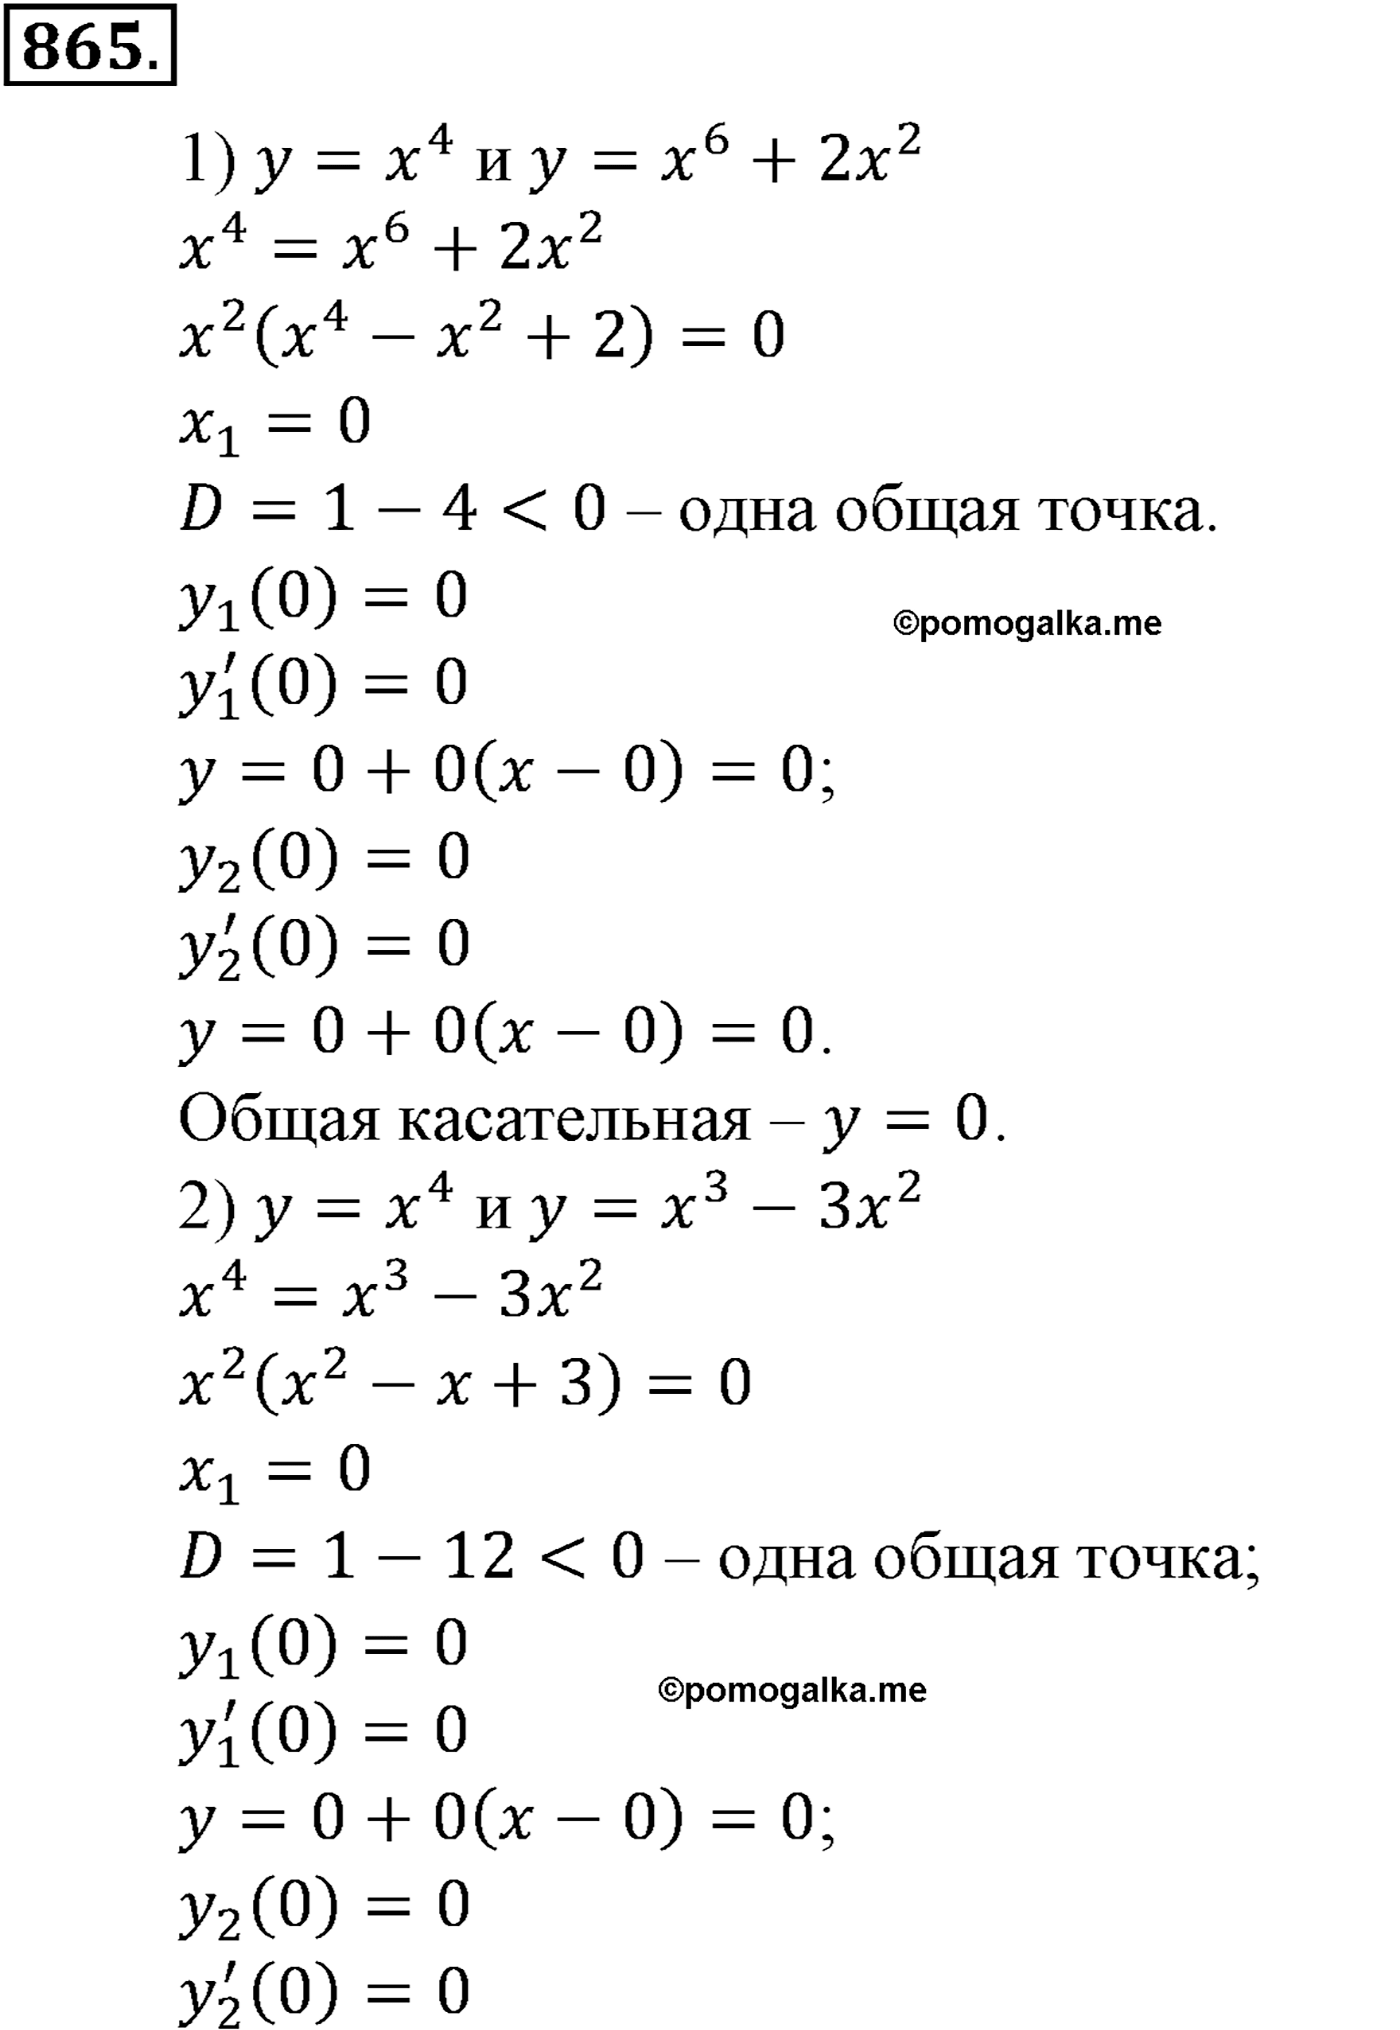 разбор задачи №865 по алгебре за 10-11 класс из учебника Алимова, Колягина